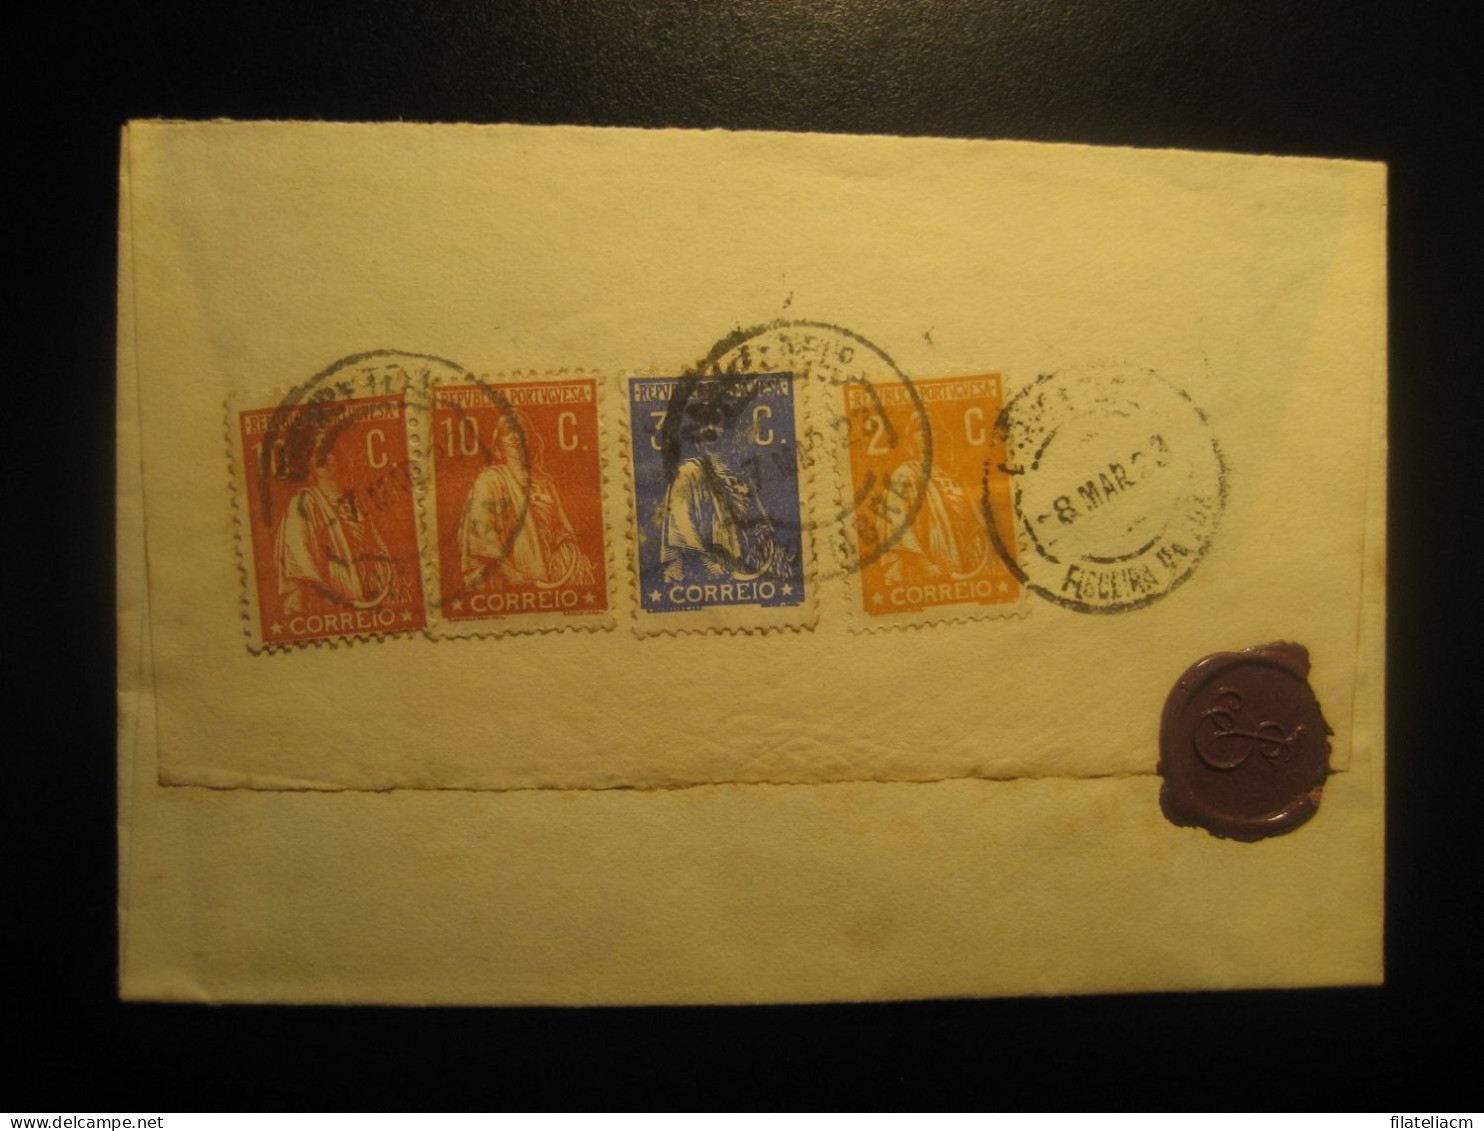 FIGUEIRA DA FOZ 1923 4 Stamp Ceres On Cancel Cover PORTUGAL - Briefe U. Dokumente